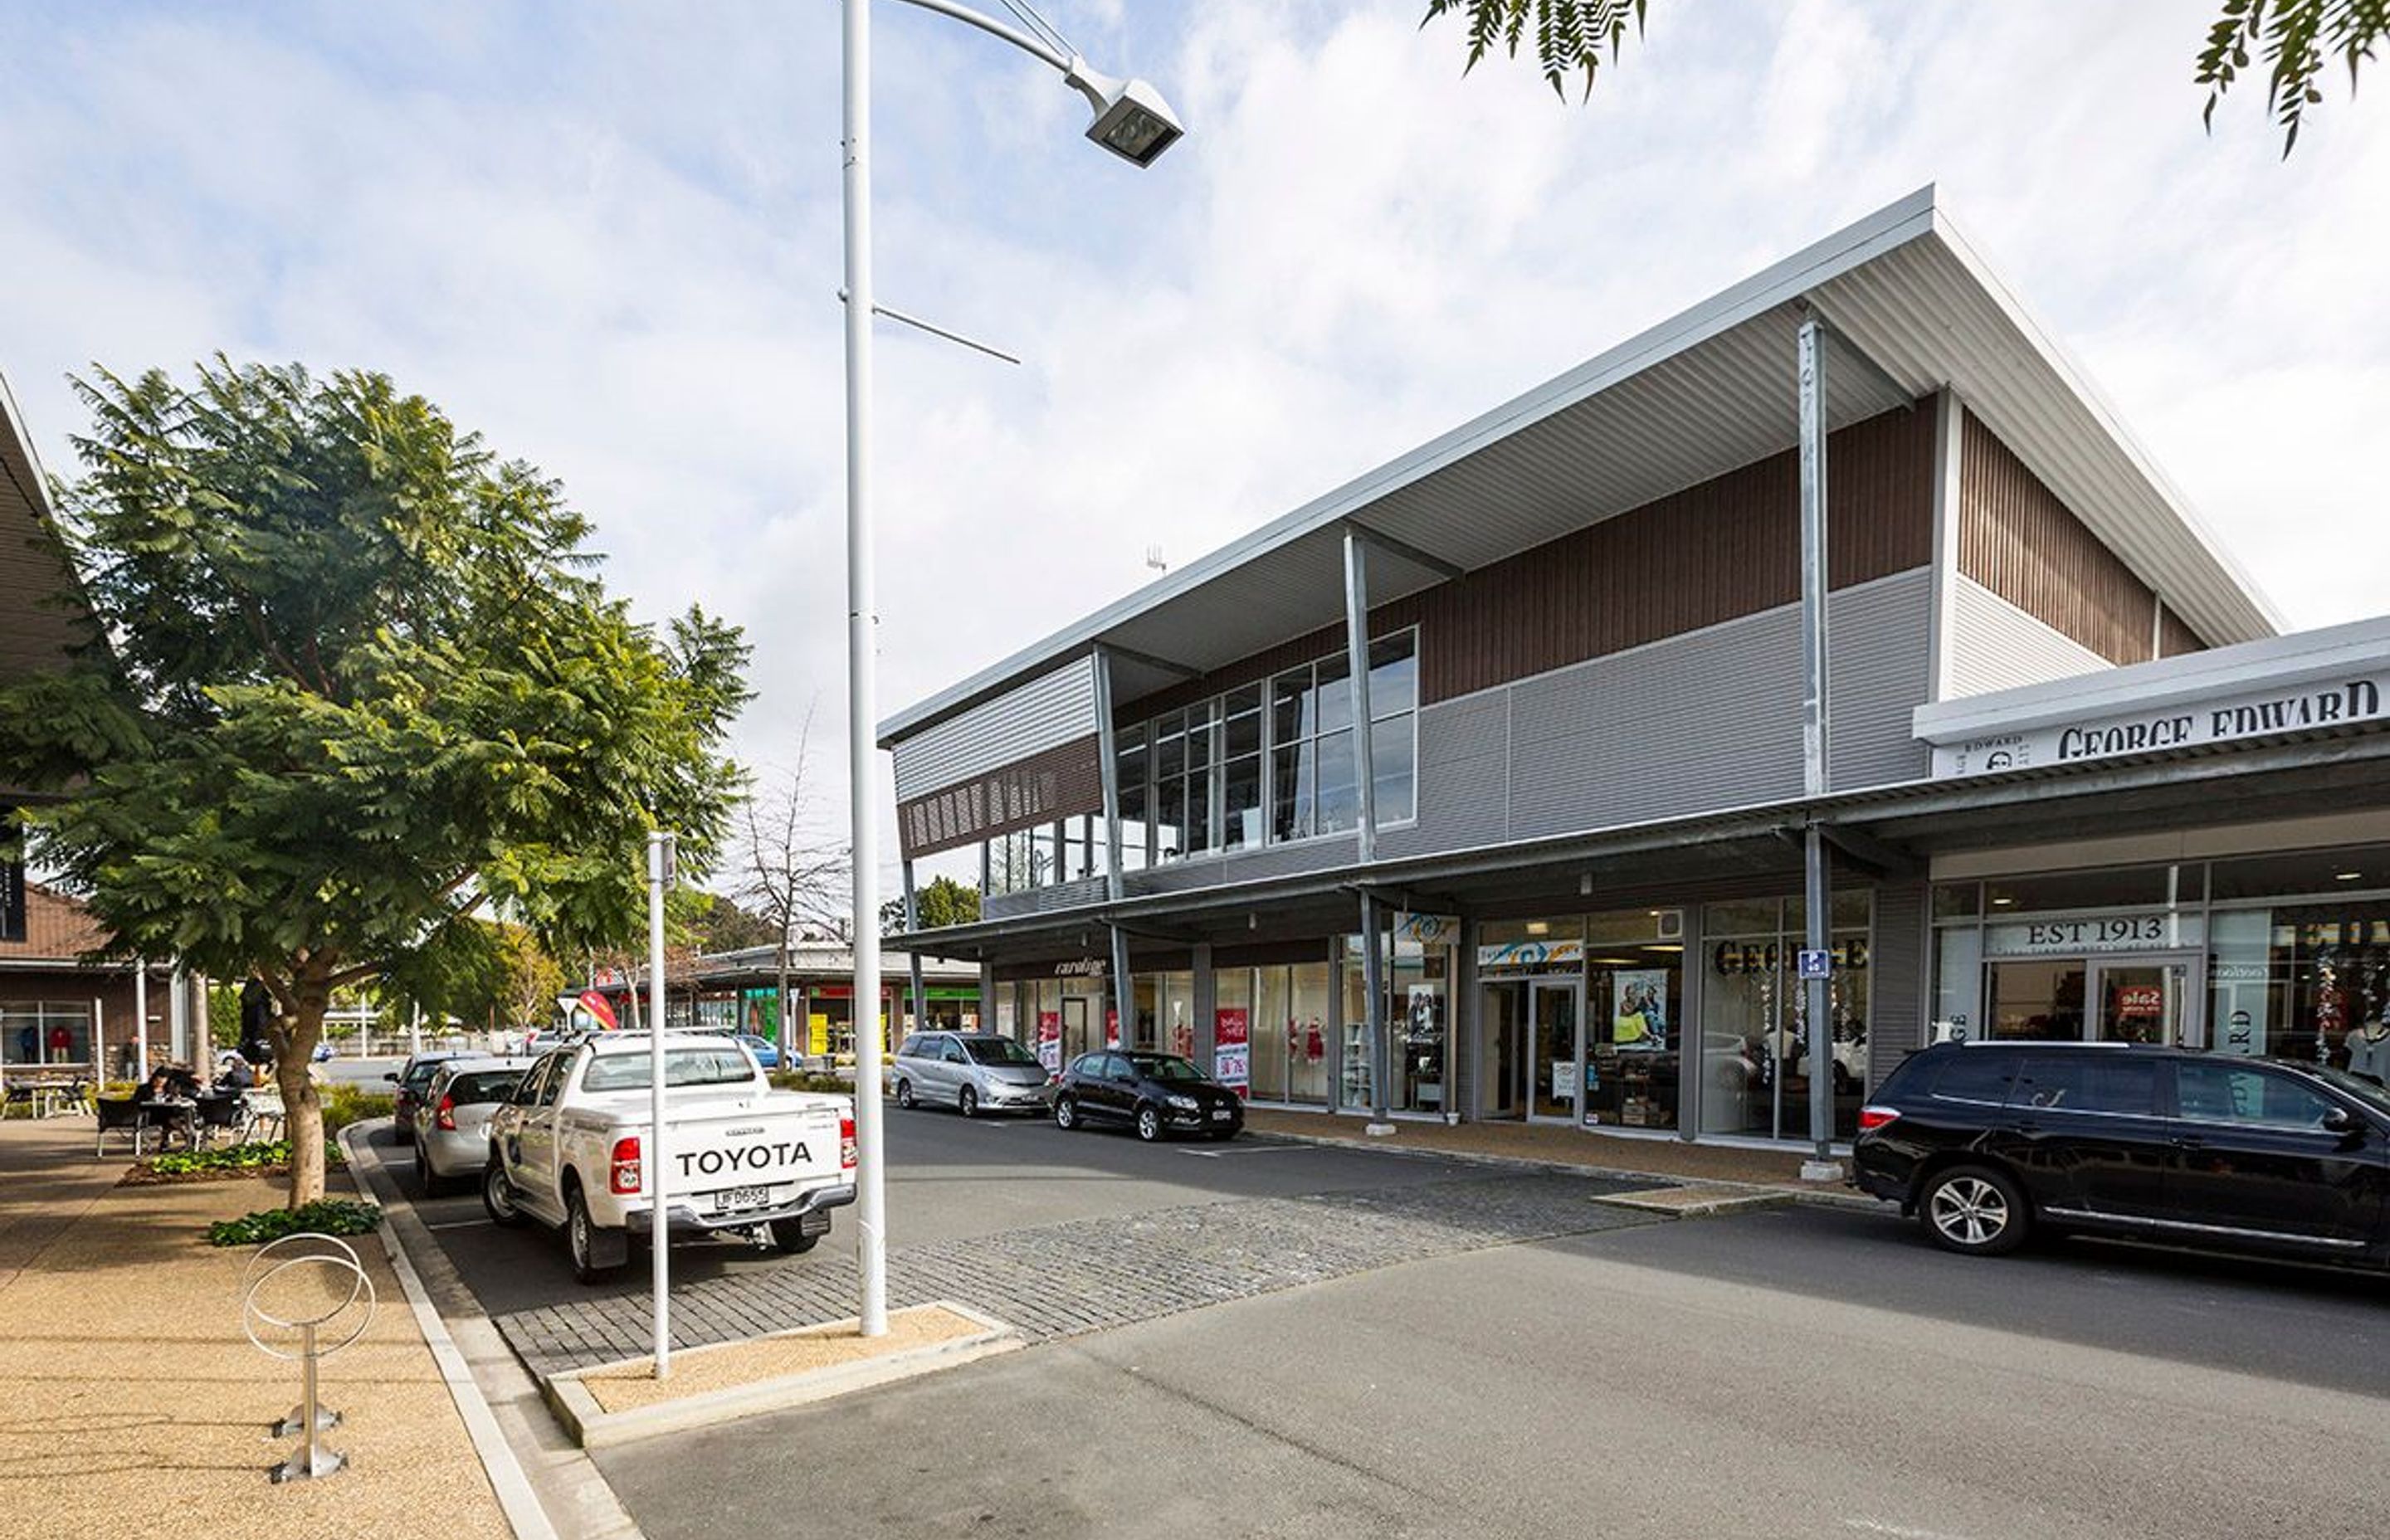 Bethlehem Shopping Centre, Tauranga, New Zealand